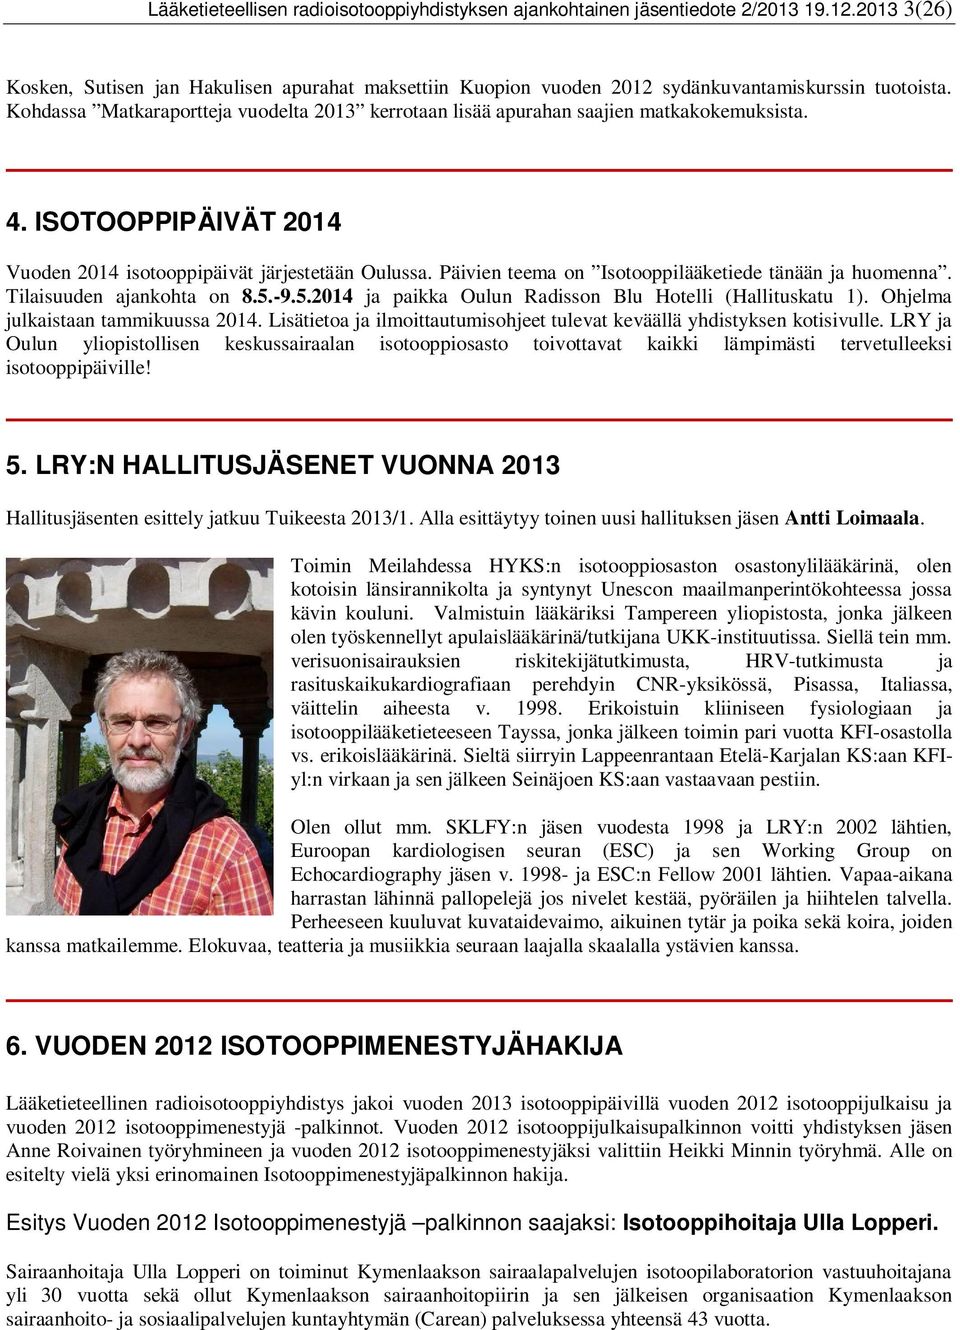 Päivien teema on Isotooppilääketiede tänään ja huomenna. Tilaisuuden ajankohta on 8.5.-9.5.2014 ja paikka Oulun Radisson Blu Hotelli (Hallituskatu 1). Ohjelma julkaistaan tammikuussa 2014.